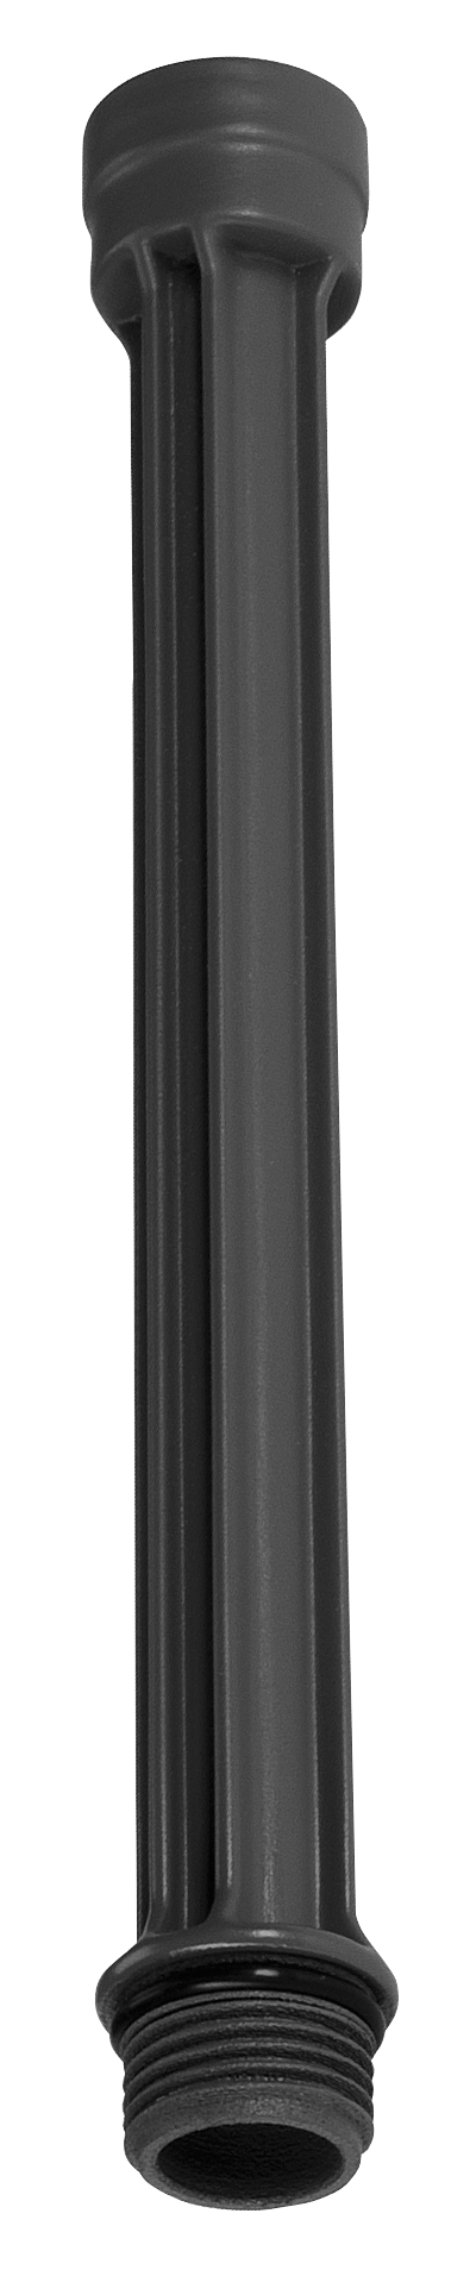 GARDENA Micro-Drip-System Verlängerungsrohr für OS 90 2 Stk.